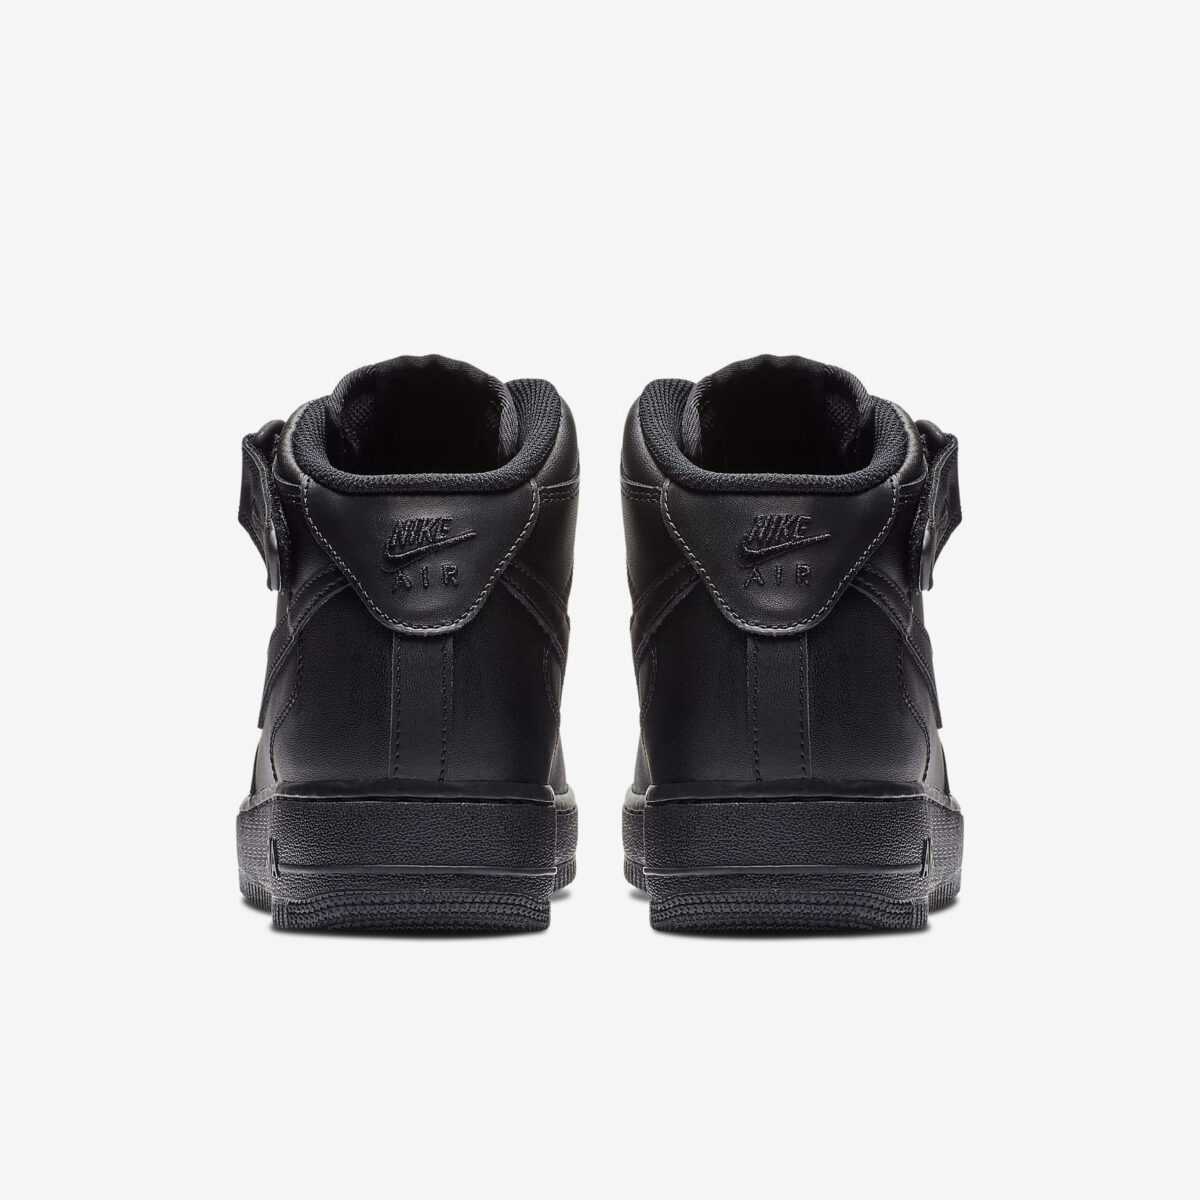 Herren Schuhe Nike Air Force 1 07 Mid schwarz einkaufen